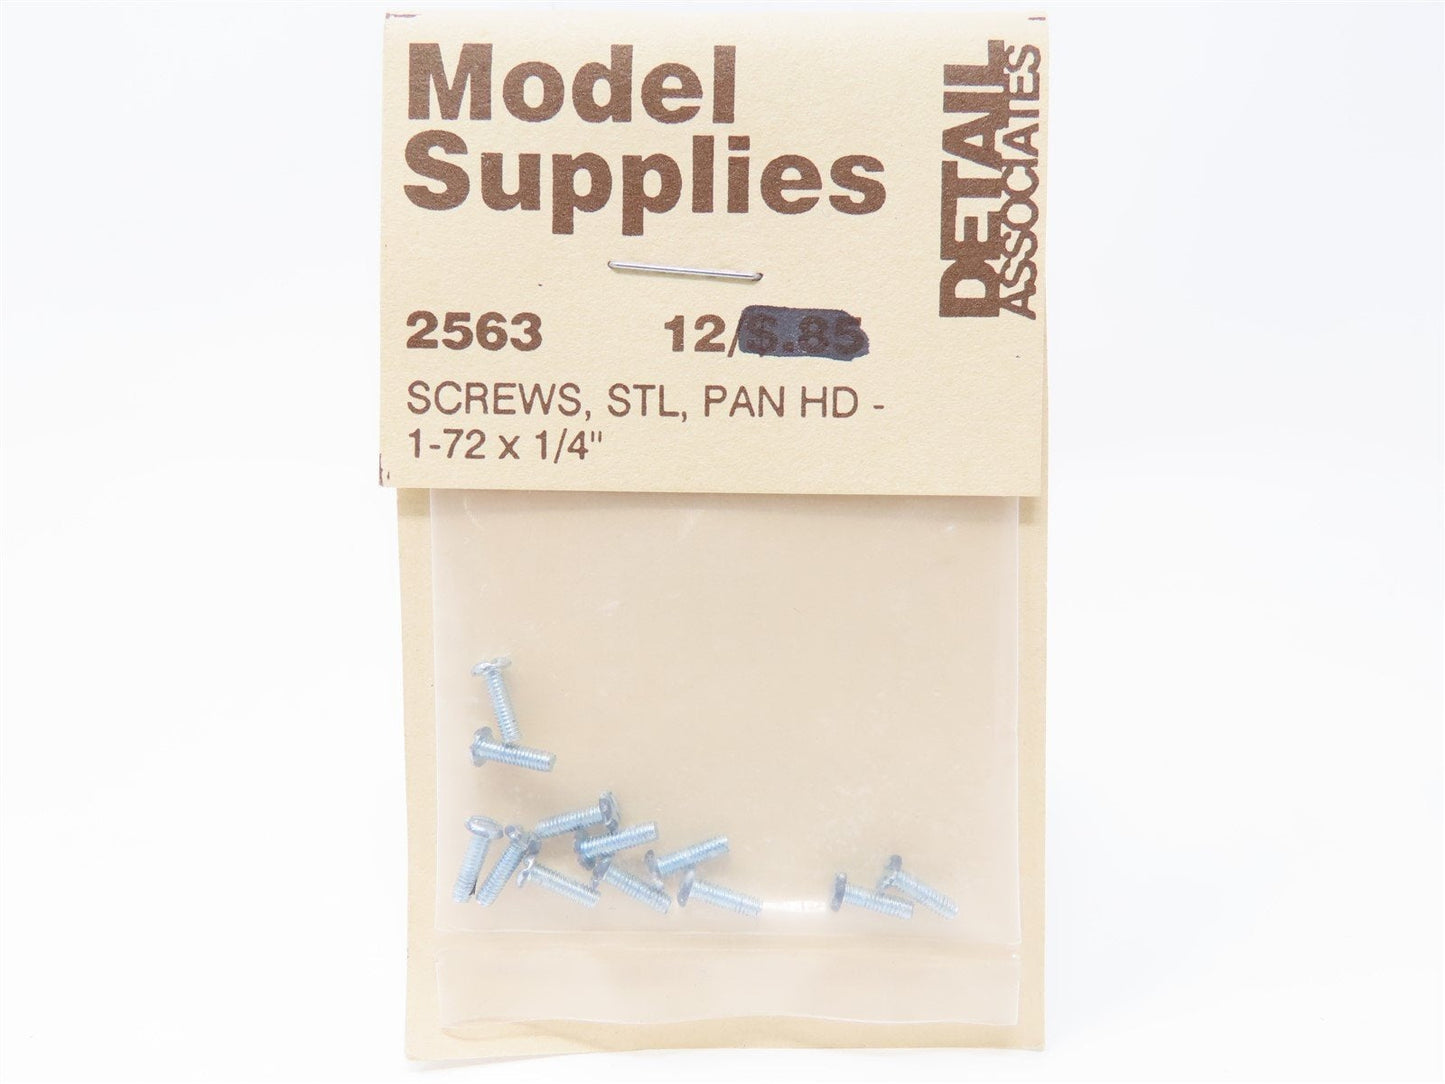 Detail Associates 2563 1-72 x 1/4 Pan Head Screws (Pack of 12)